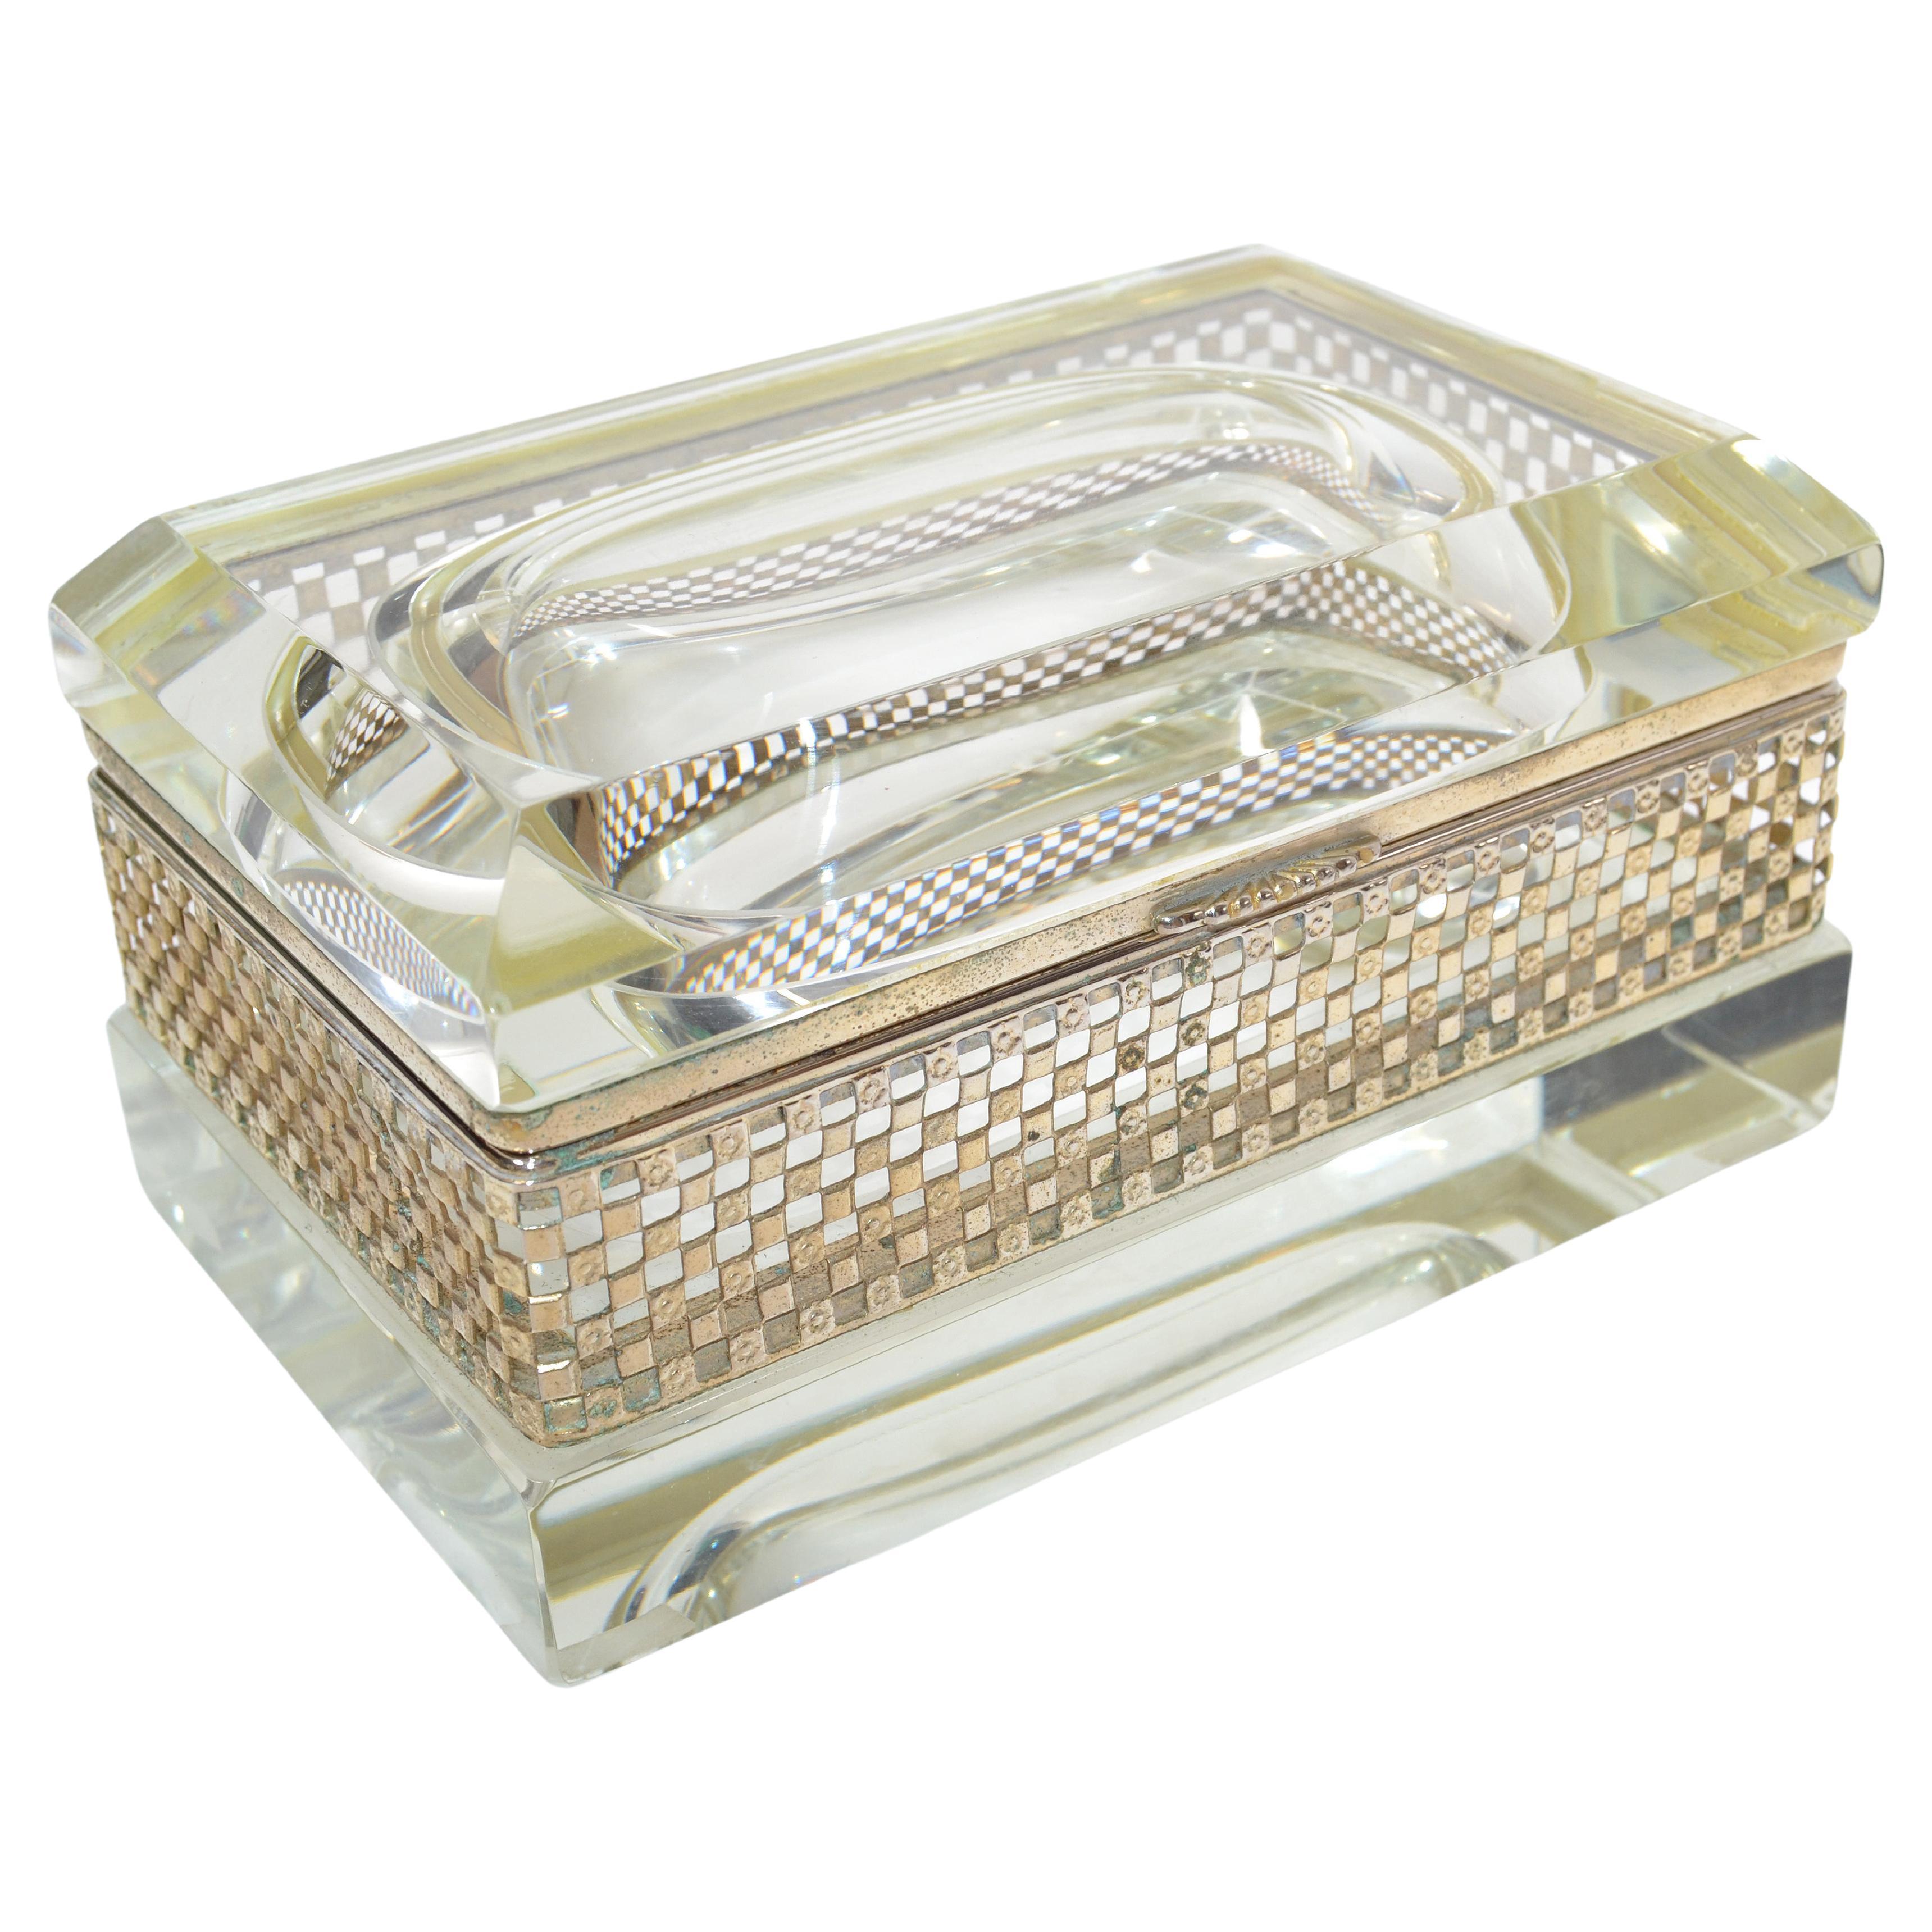 Art Deco Italian Murano Glass & 24k Gold Plate Jewelry Case Mandruzzato Style 